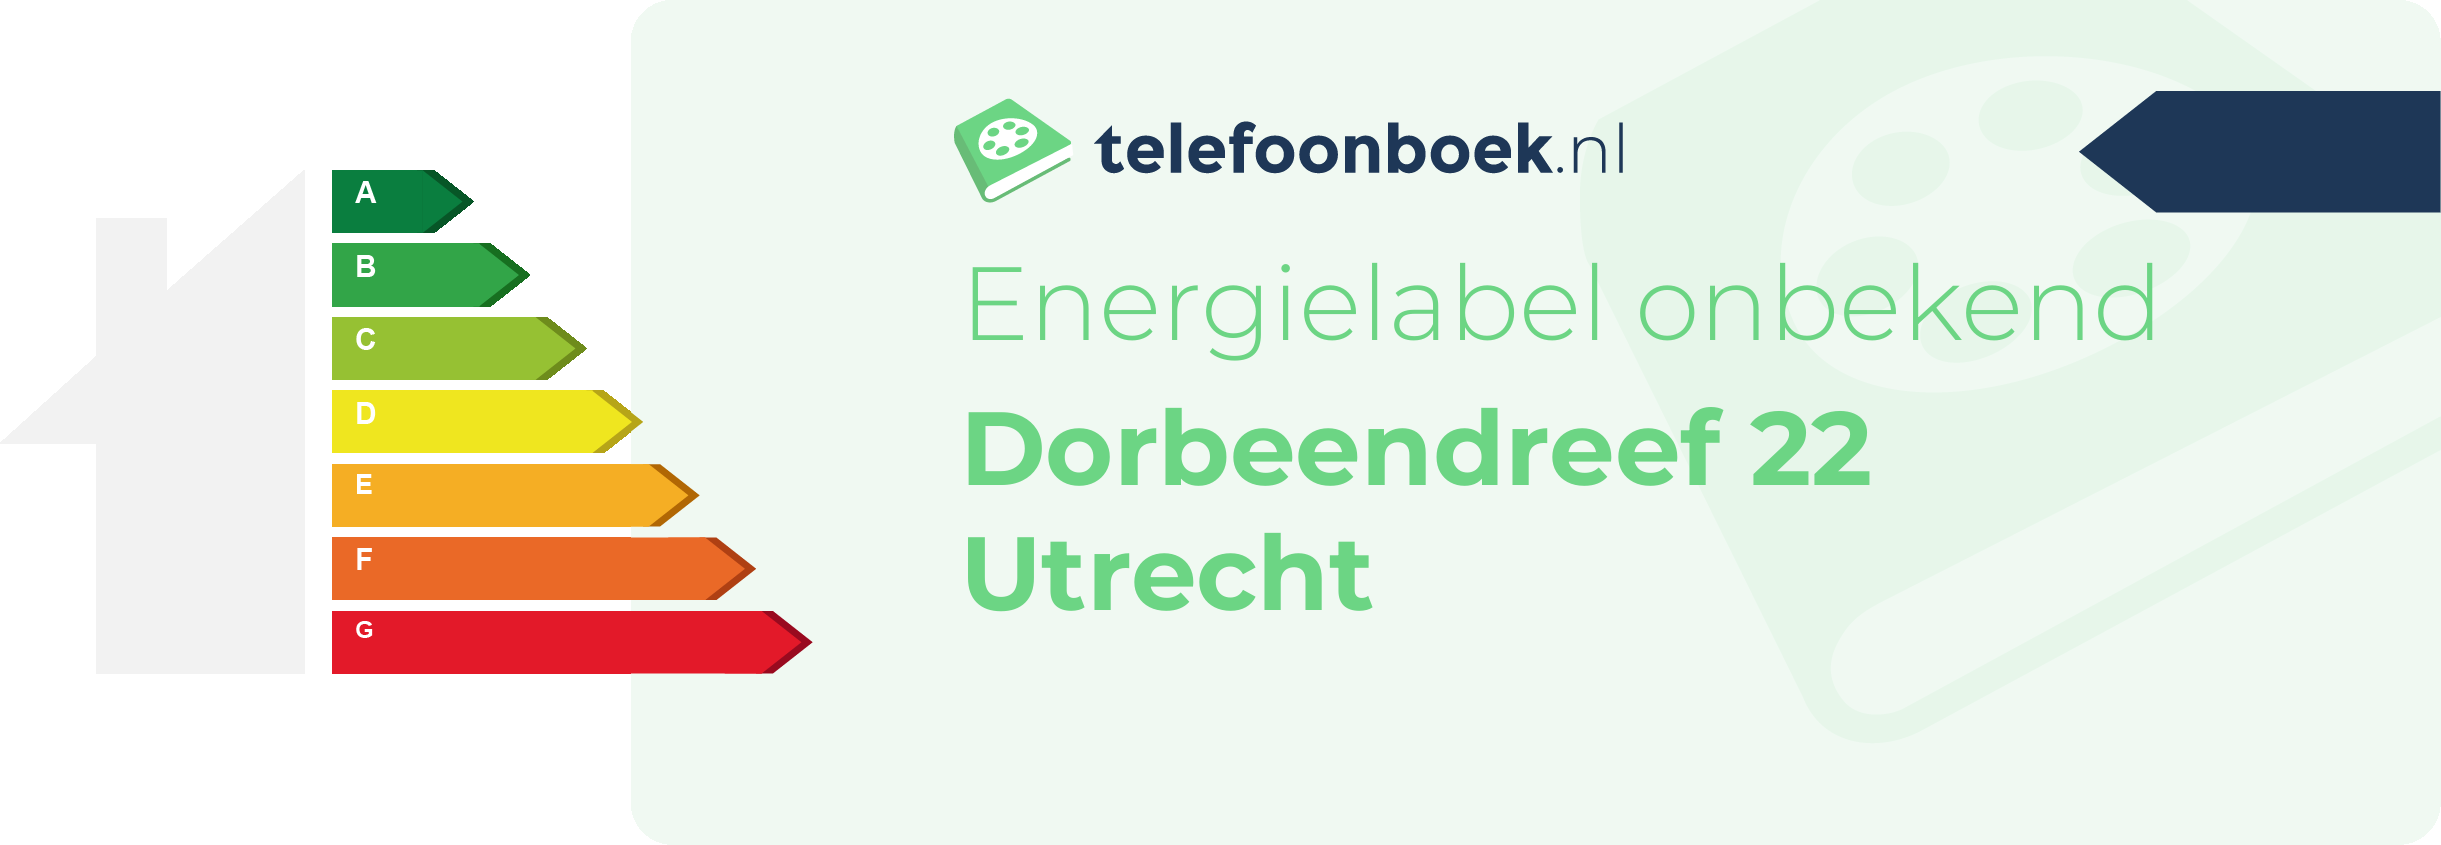 Energielabel Dorbeendreef 22 Utrecht